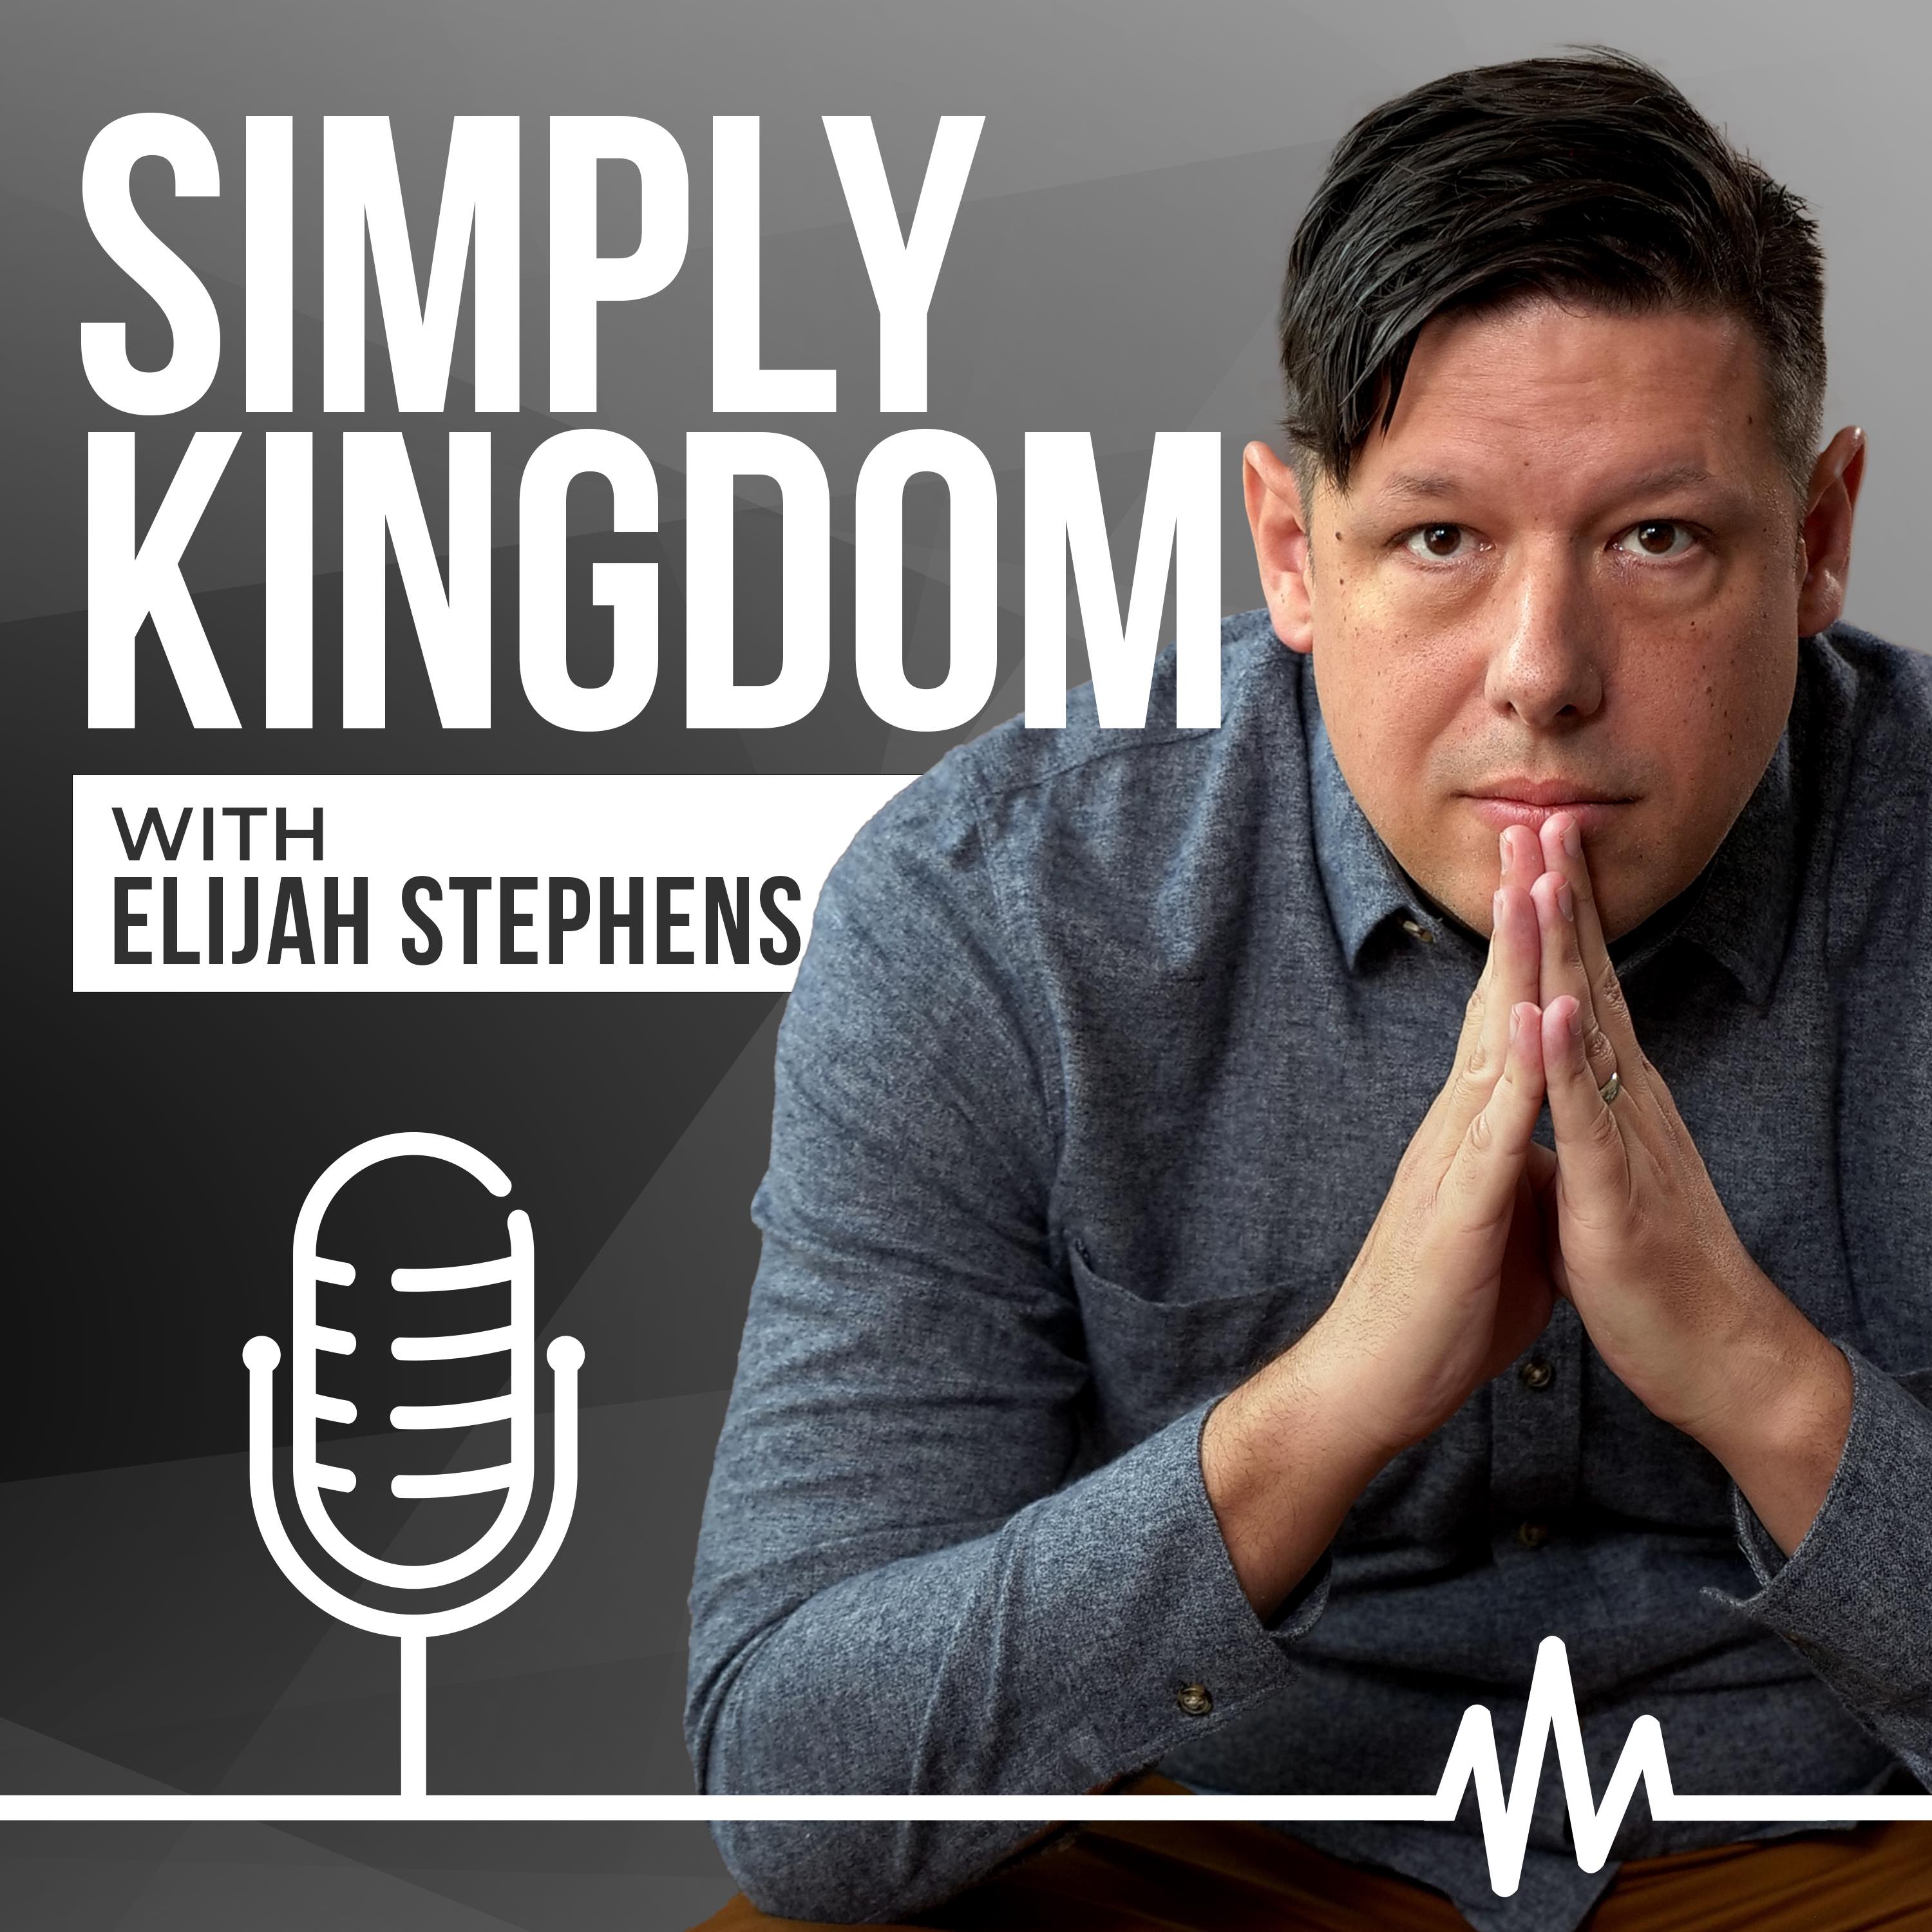 Simply Kingdom with Elijah Stephens